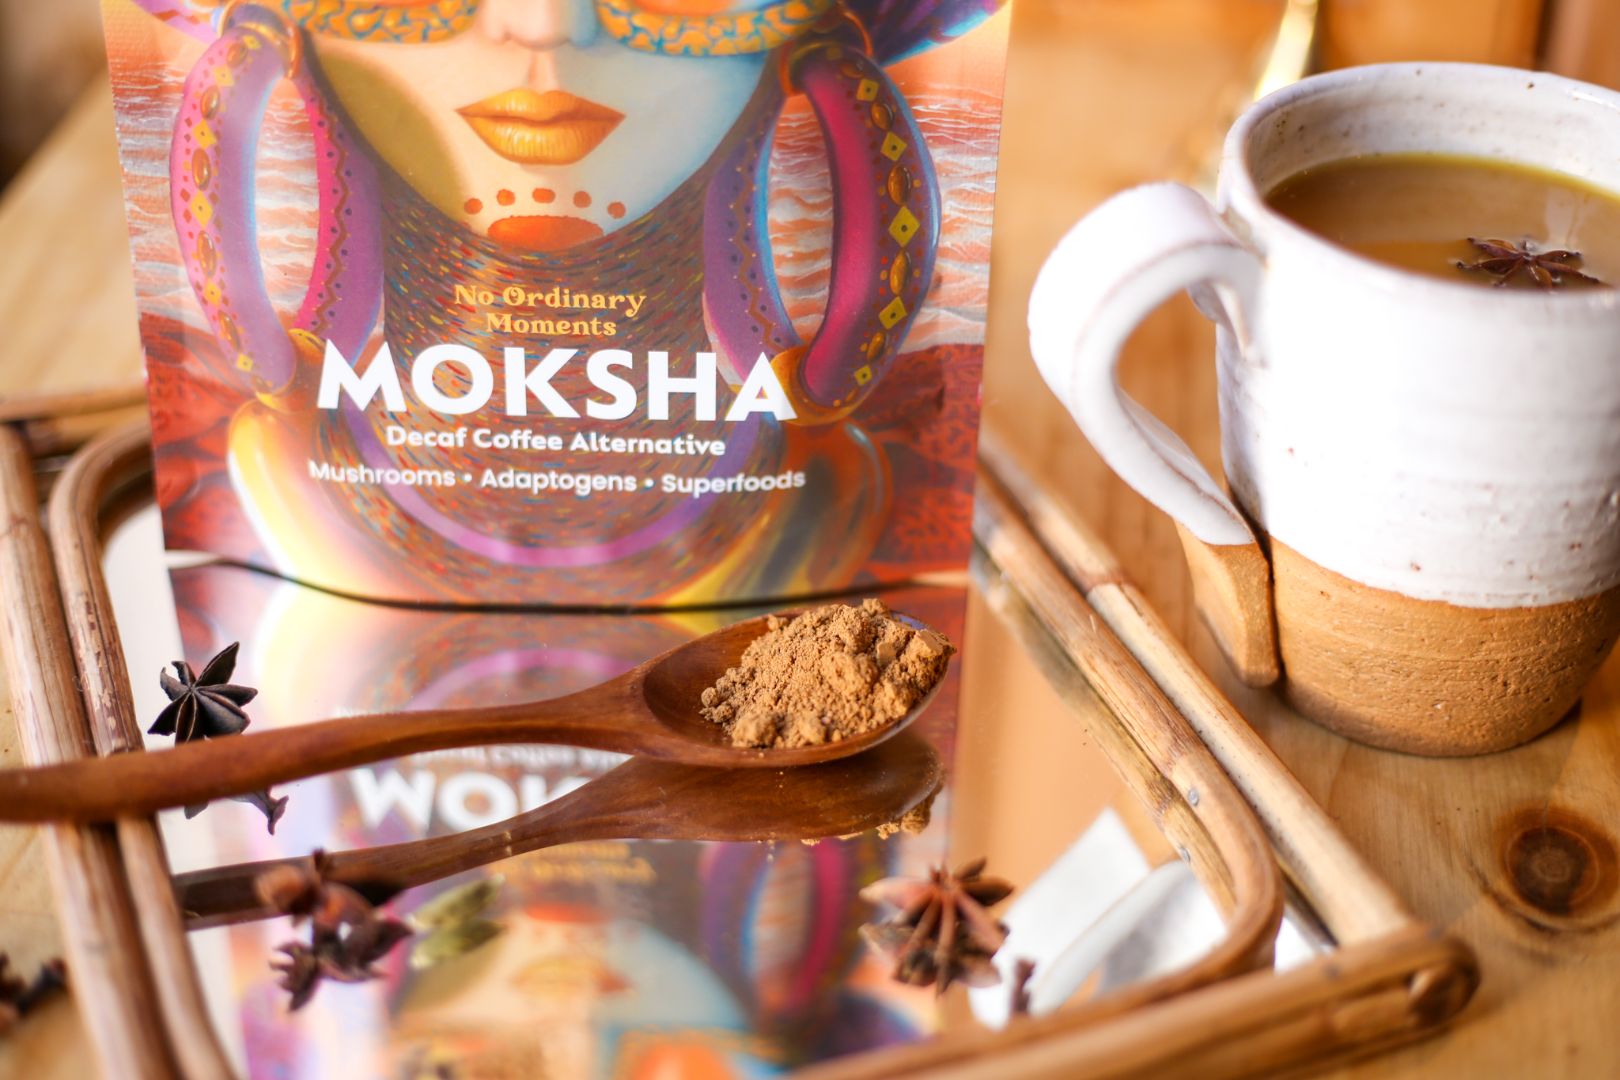 No Ordinary Moments Moksha Moksha product on a wooden spoon